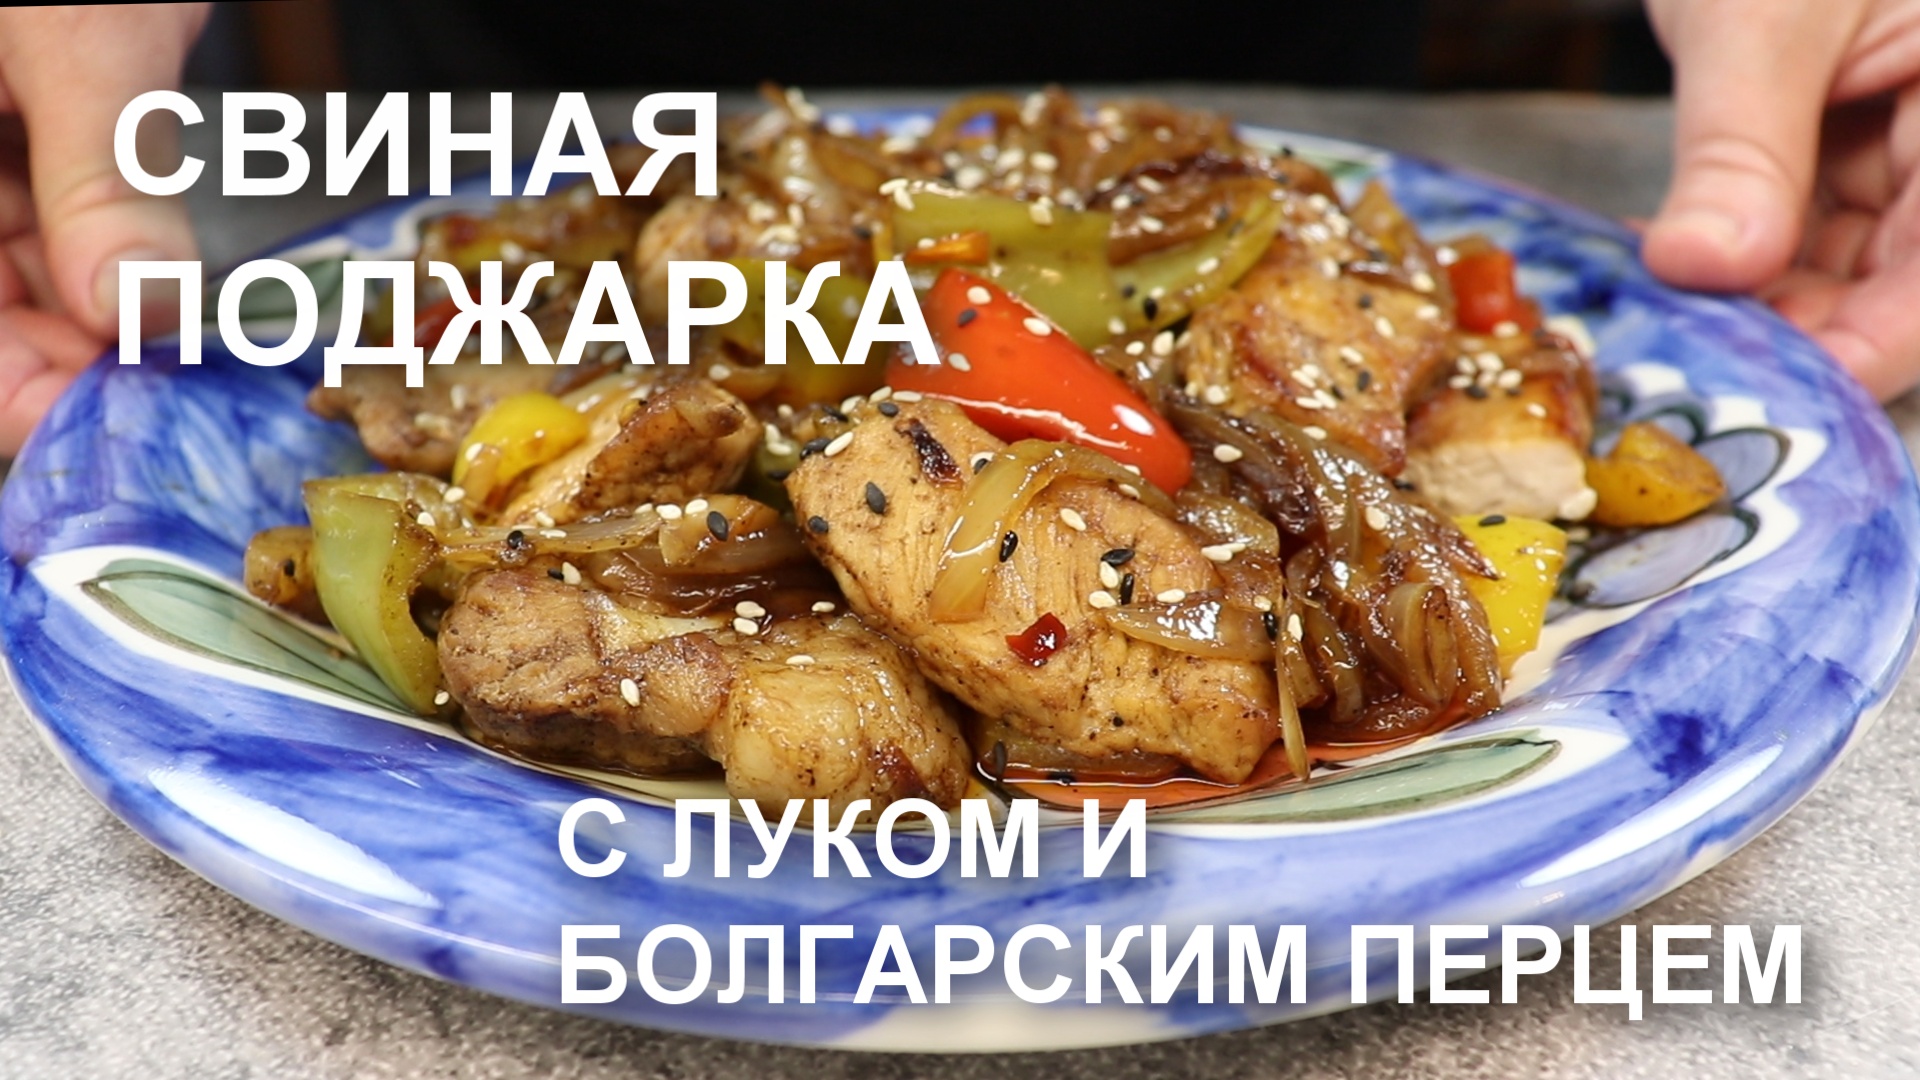 ПОДЖАРКА из СВИНИНЫ с ЛУКОМ и болгарским перцем. Как приготовить вкусно поджарку из свинины